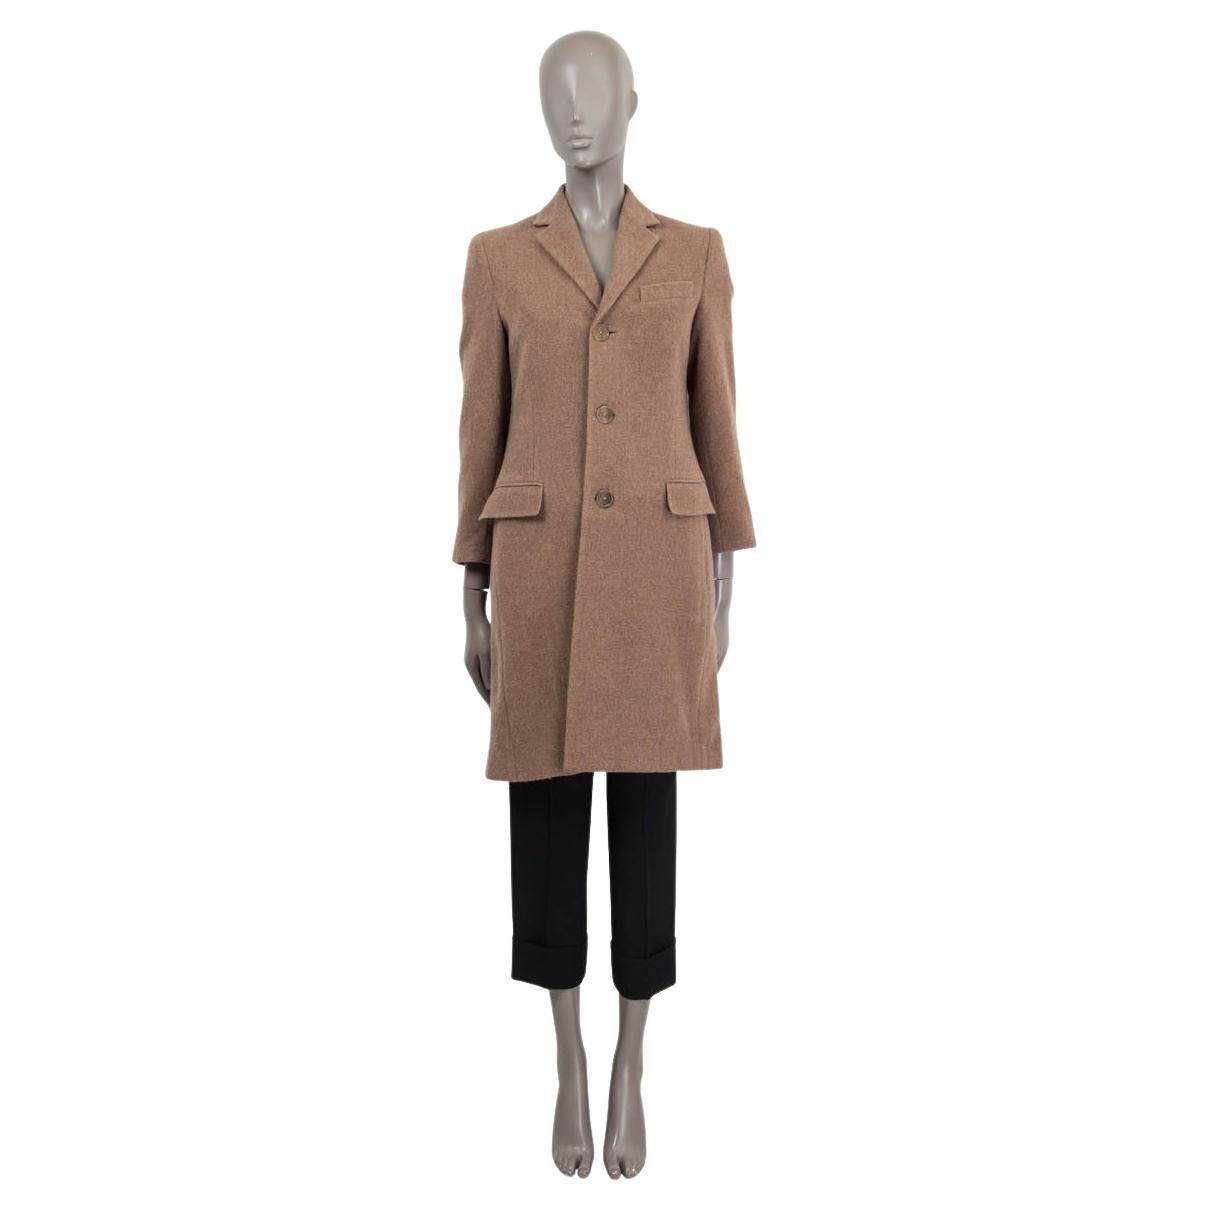 RALPH LAUREN PURPLE LABLE brown cashmere CLASSIC Coat Jacket 0 XS